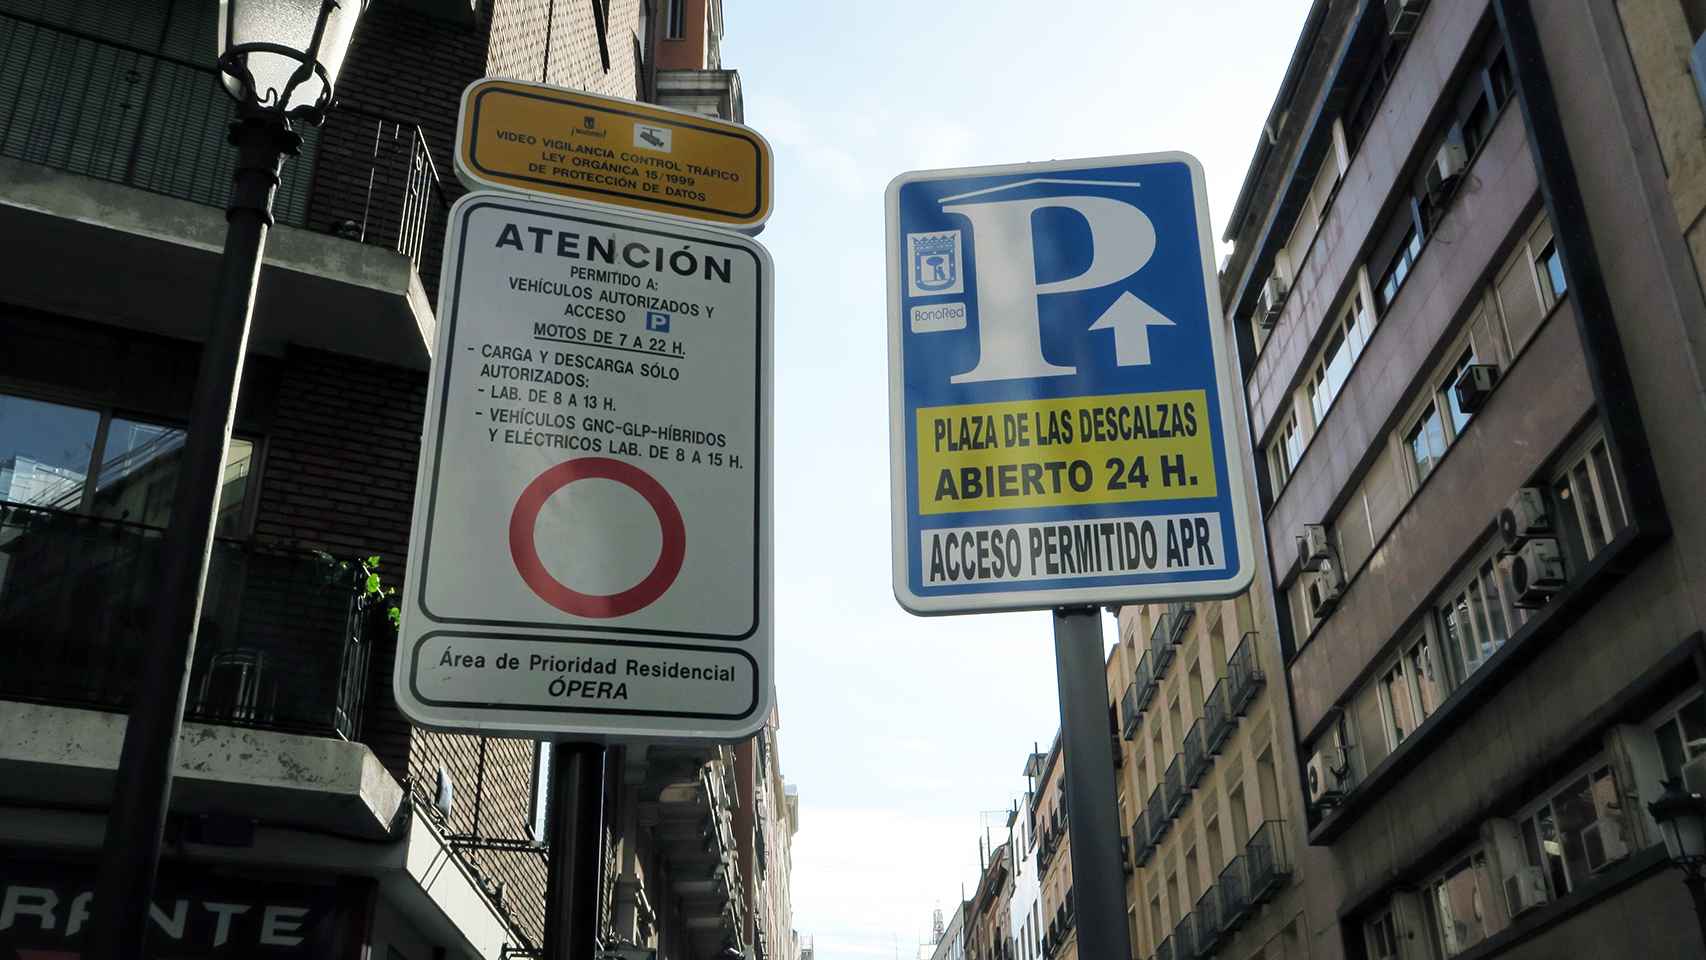 La nueva señal instalada en la calle Leganitos 24 en Madrid